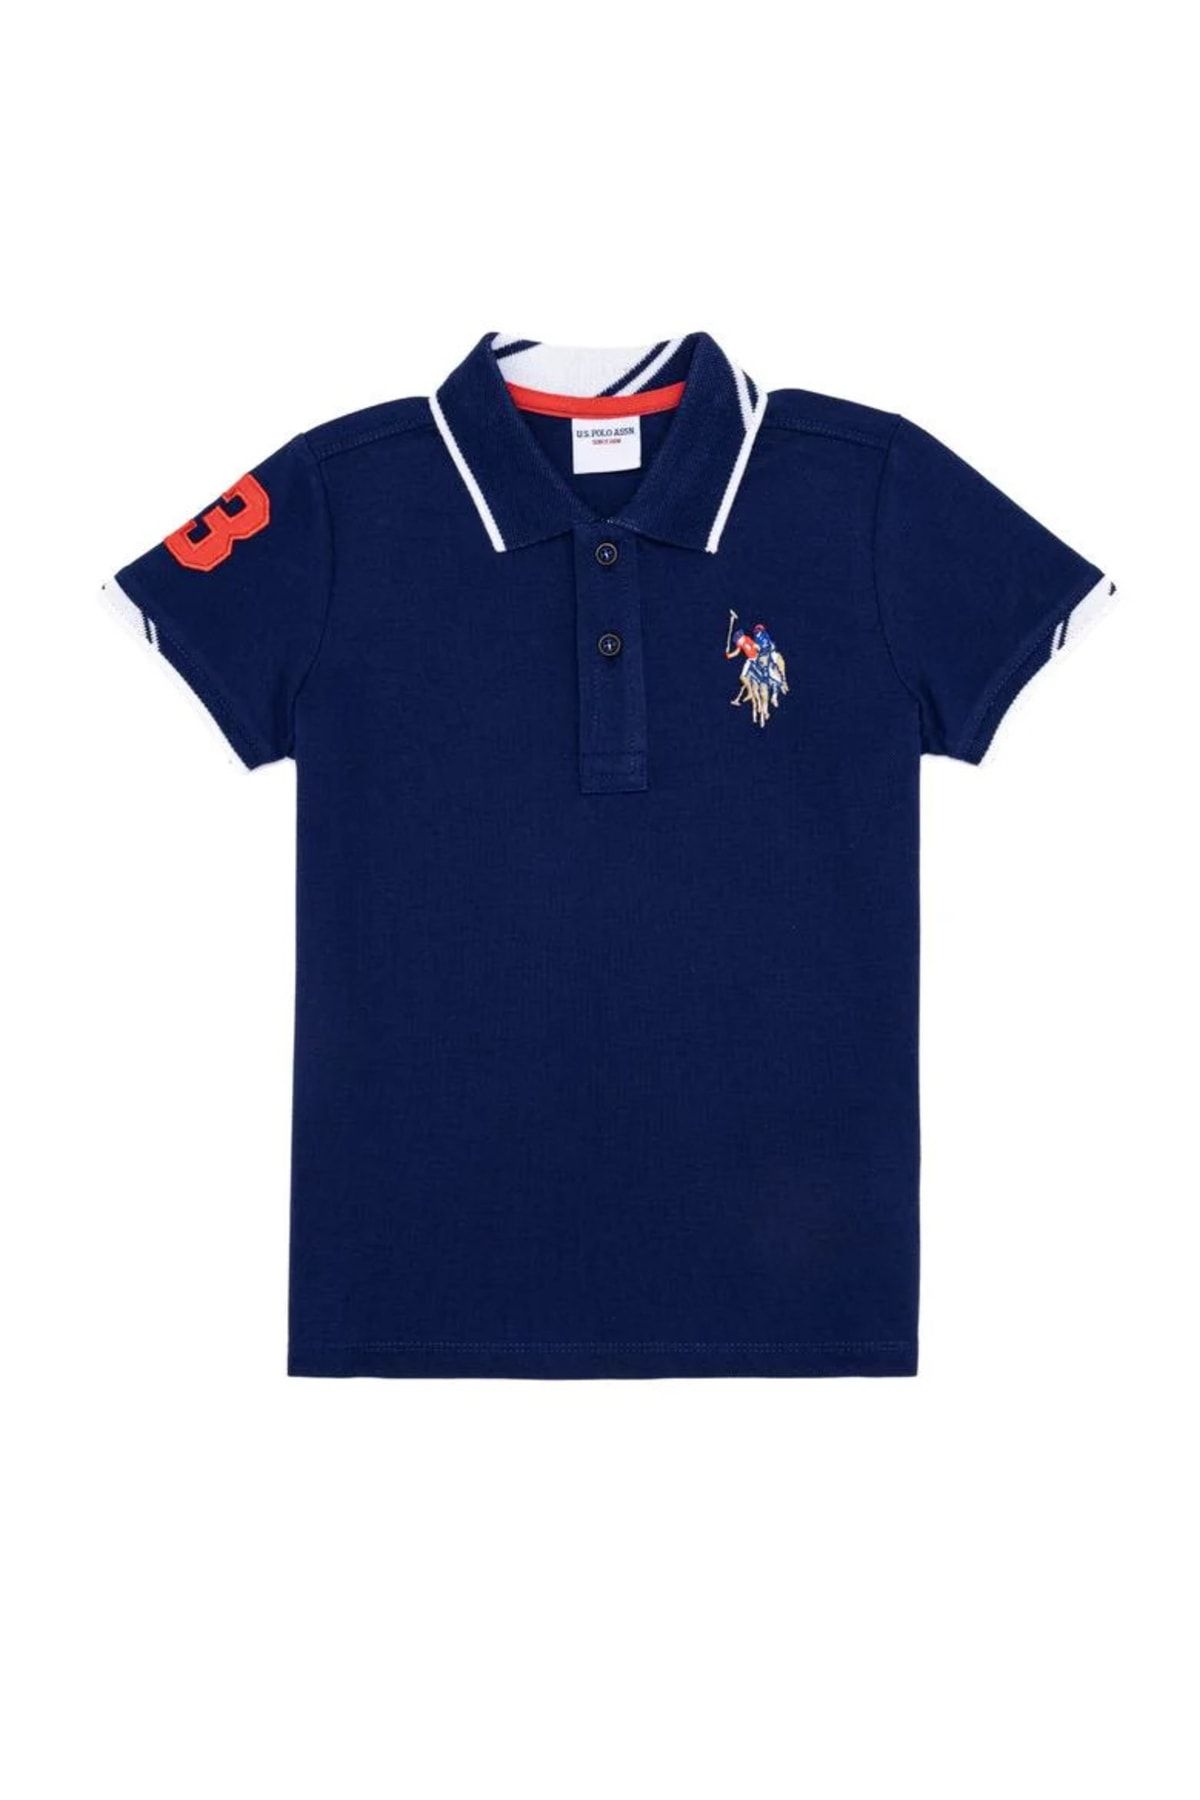 U.S. Polo Assn. Erkek Çocuk Lacivert Polo Yaka T-shirt